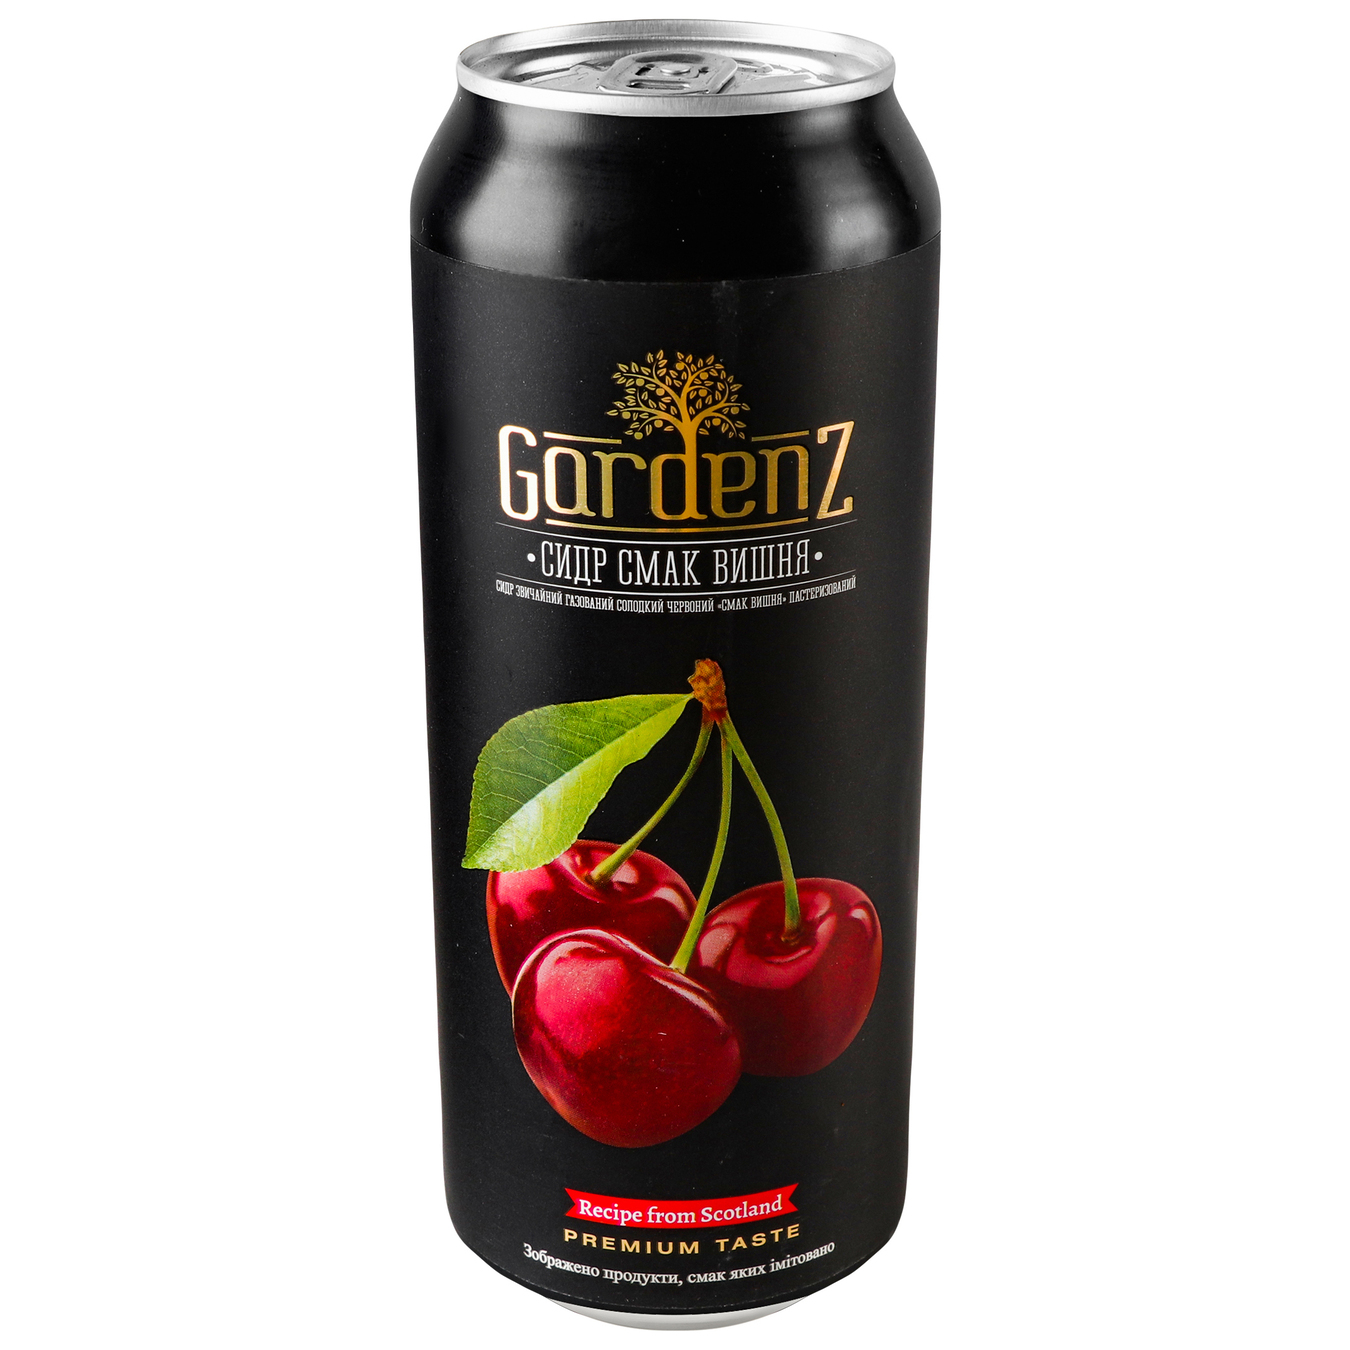 Gardenz cherry cider 5.4% 0.5 l iron can 3